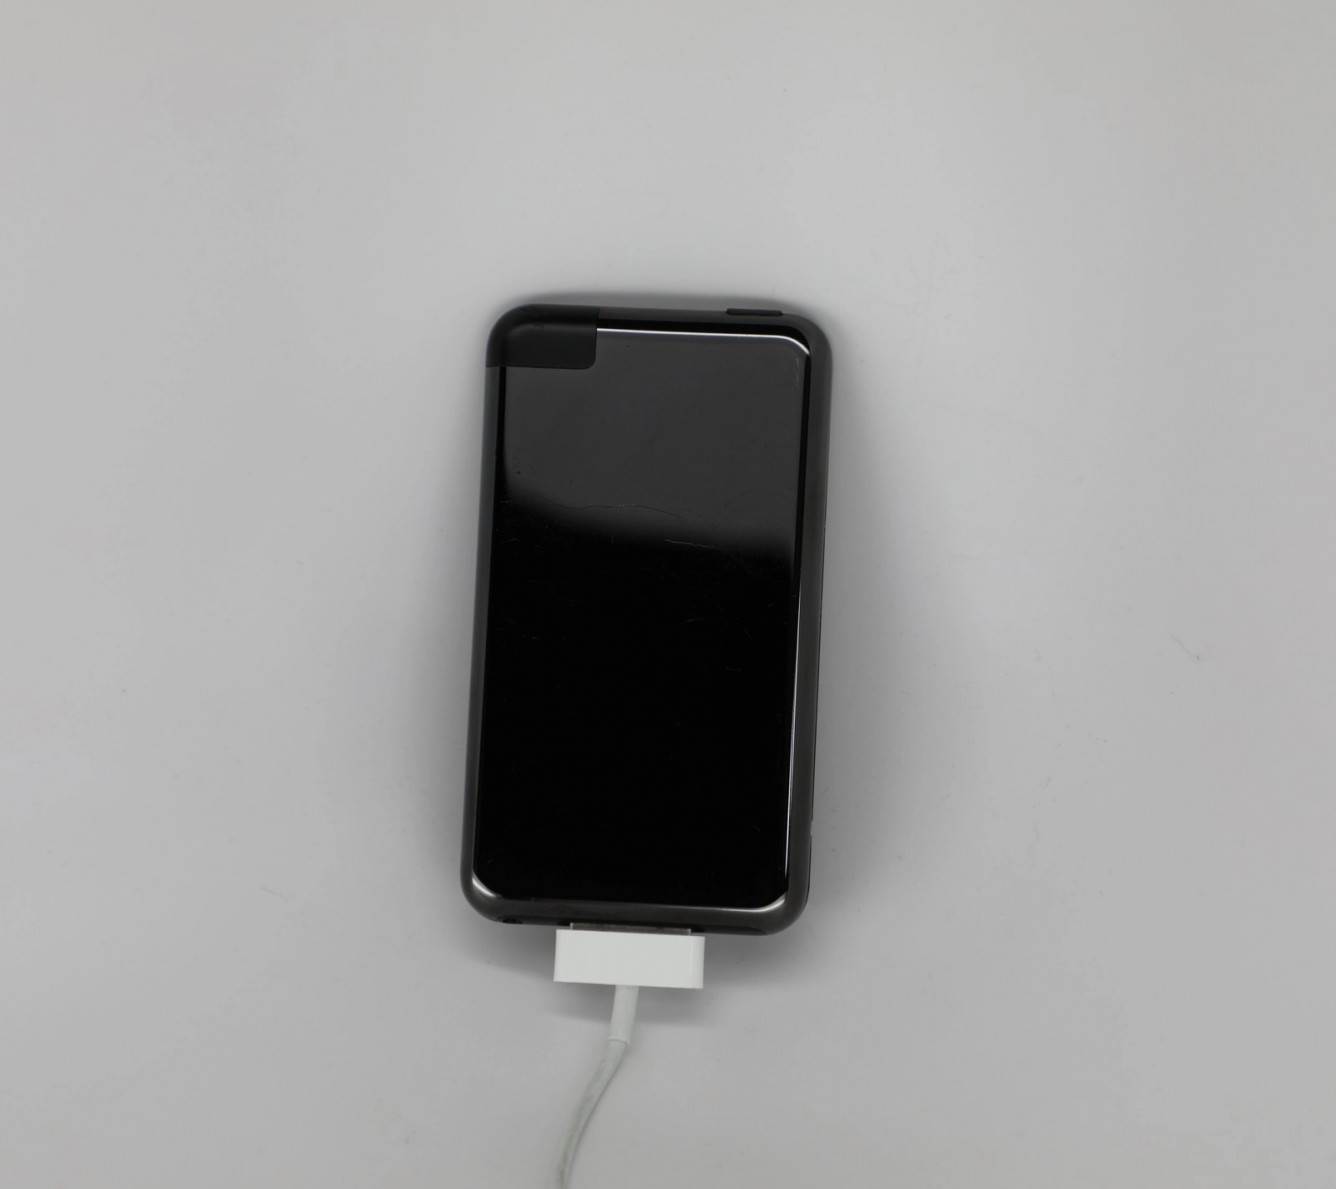 Pierwszy iPod Touch mógł mieć czarny błyszczący tył polecane, ciekawostki iPod Touch  Użytkownik Twittera DongleBookPro udostępnił zdjęcia prototypu iPoda Touch pierwszej generacji z błyszczącym czarnym panelem tylnym w stylu Mac Pro. iPodtouch 1